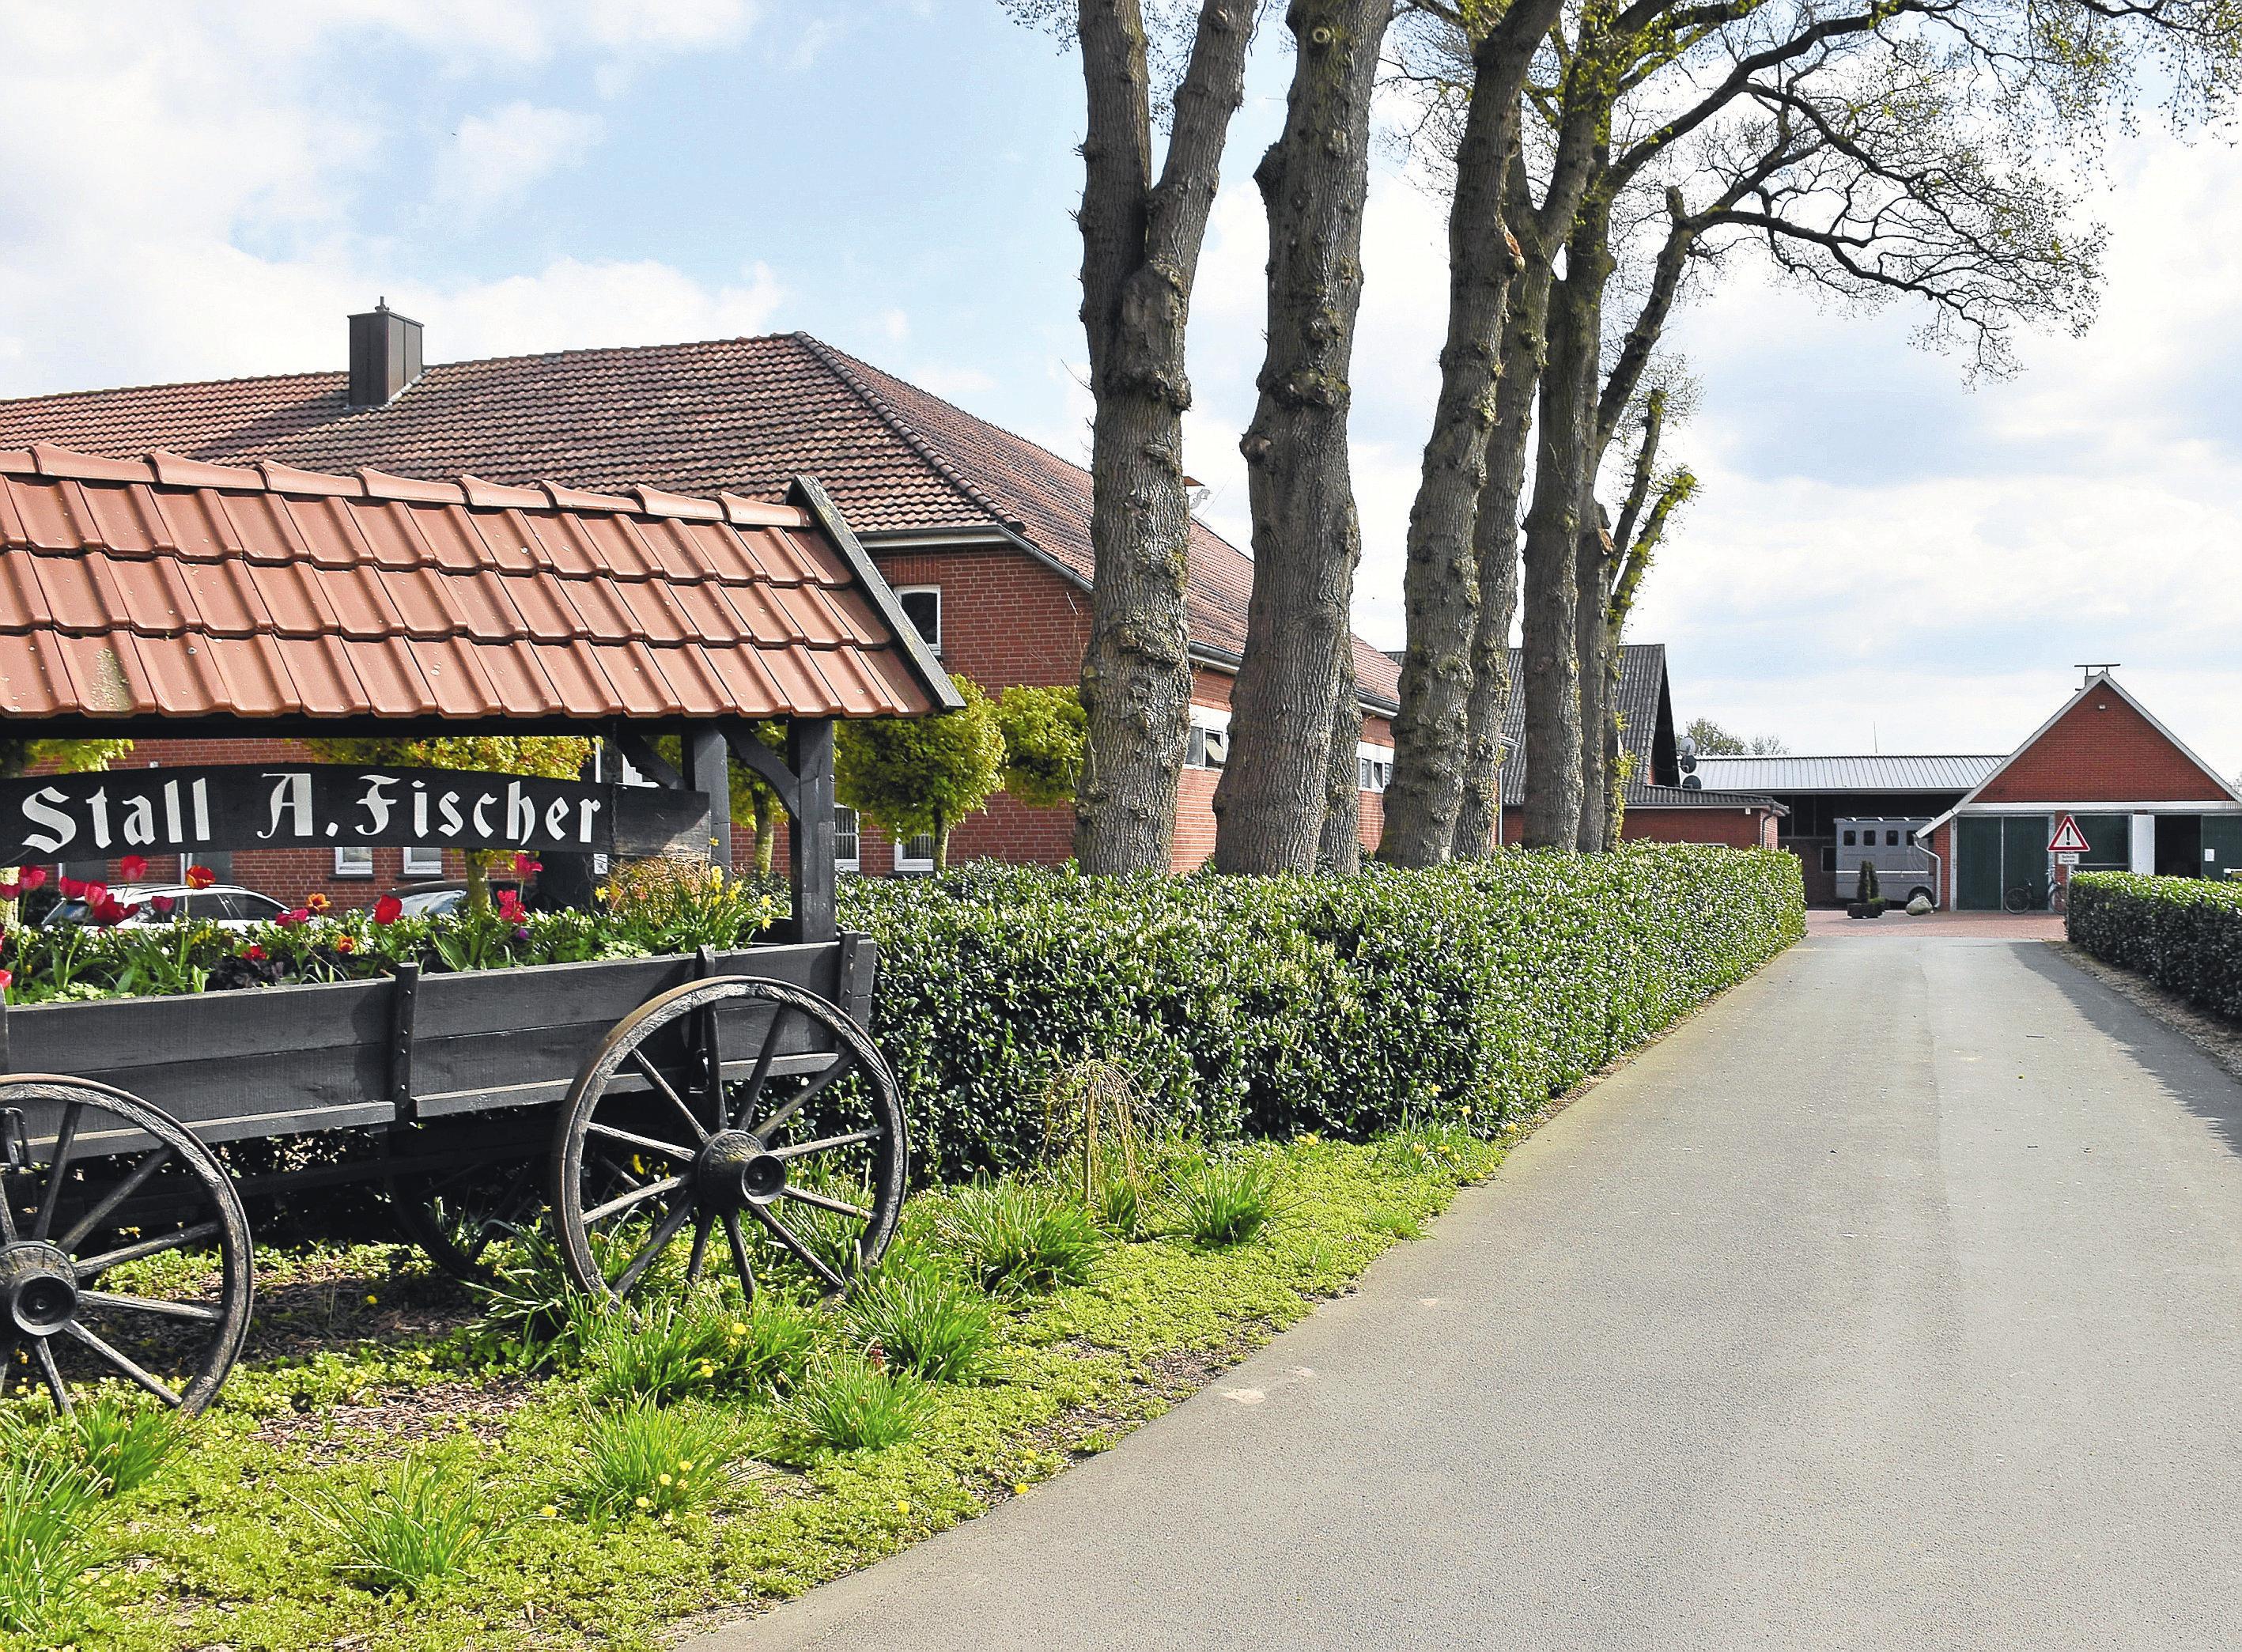 Die Zufahrt zur Hofanlage Arnold Fischer: Seit einigen Jahren ist sie im Besitz des Lohner Unternehmers. Zuvor gehörte sie der Familie Kathmann. Die Hengststation Kathmann wurde bereits im Jahr 1938 gegründet.